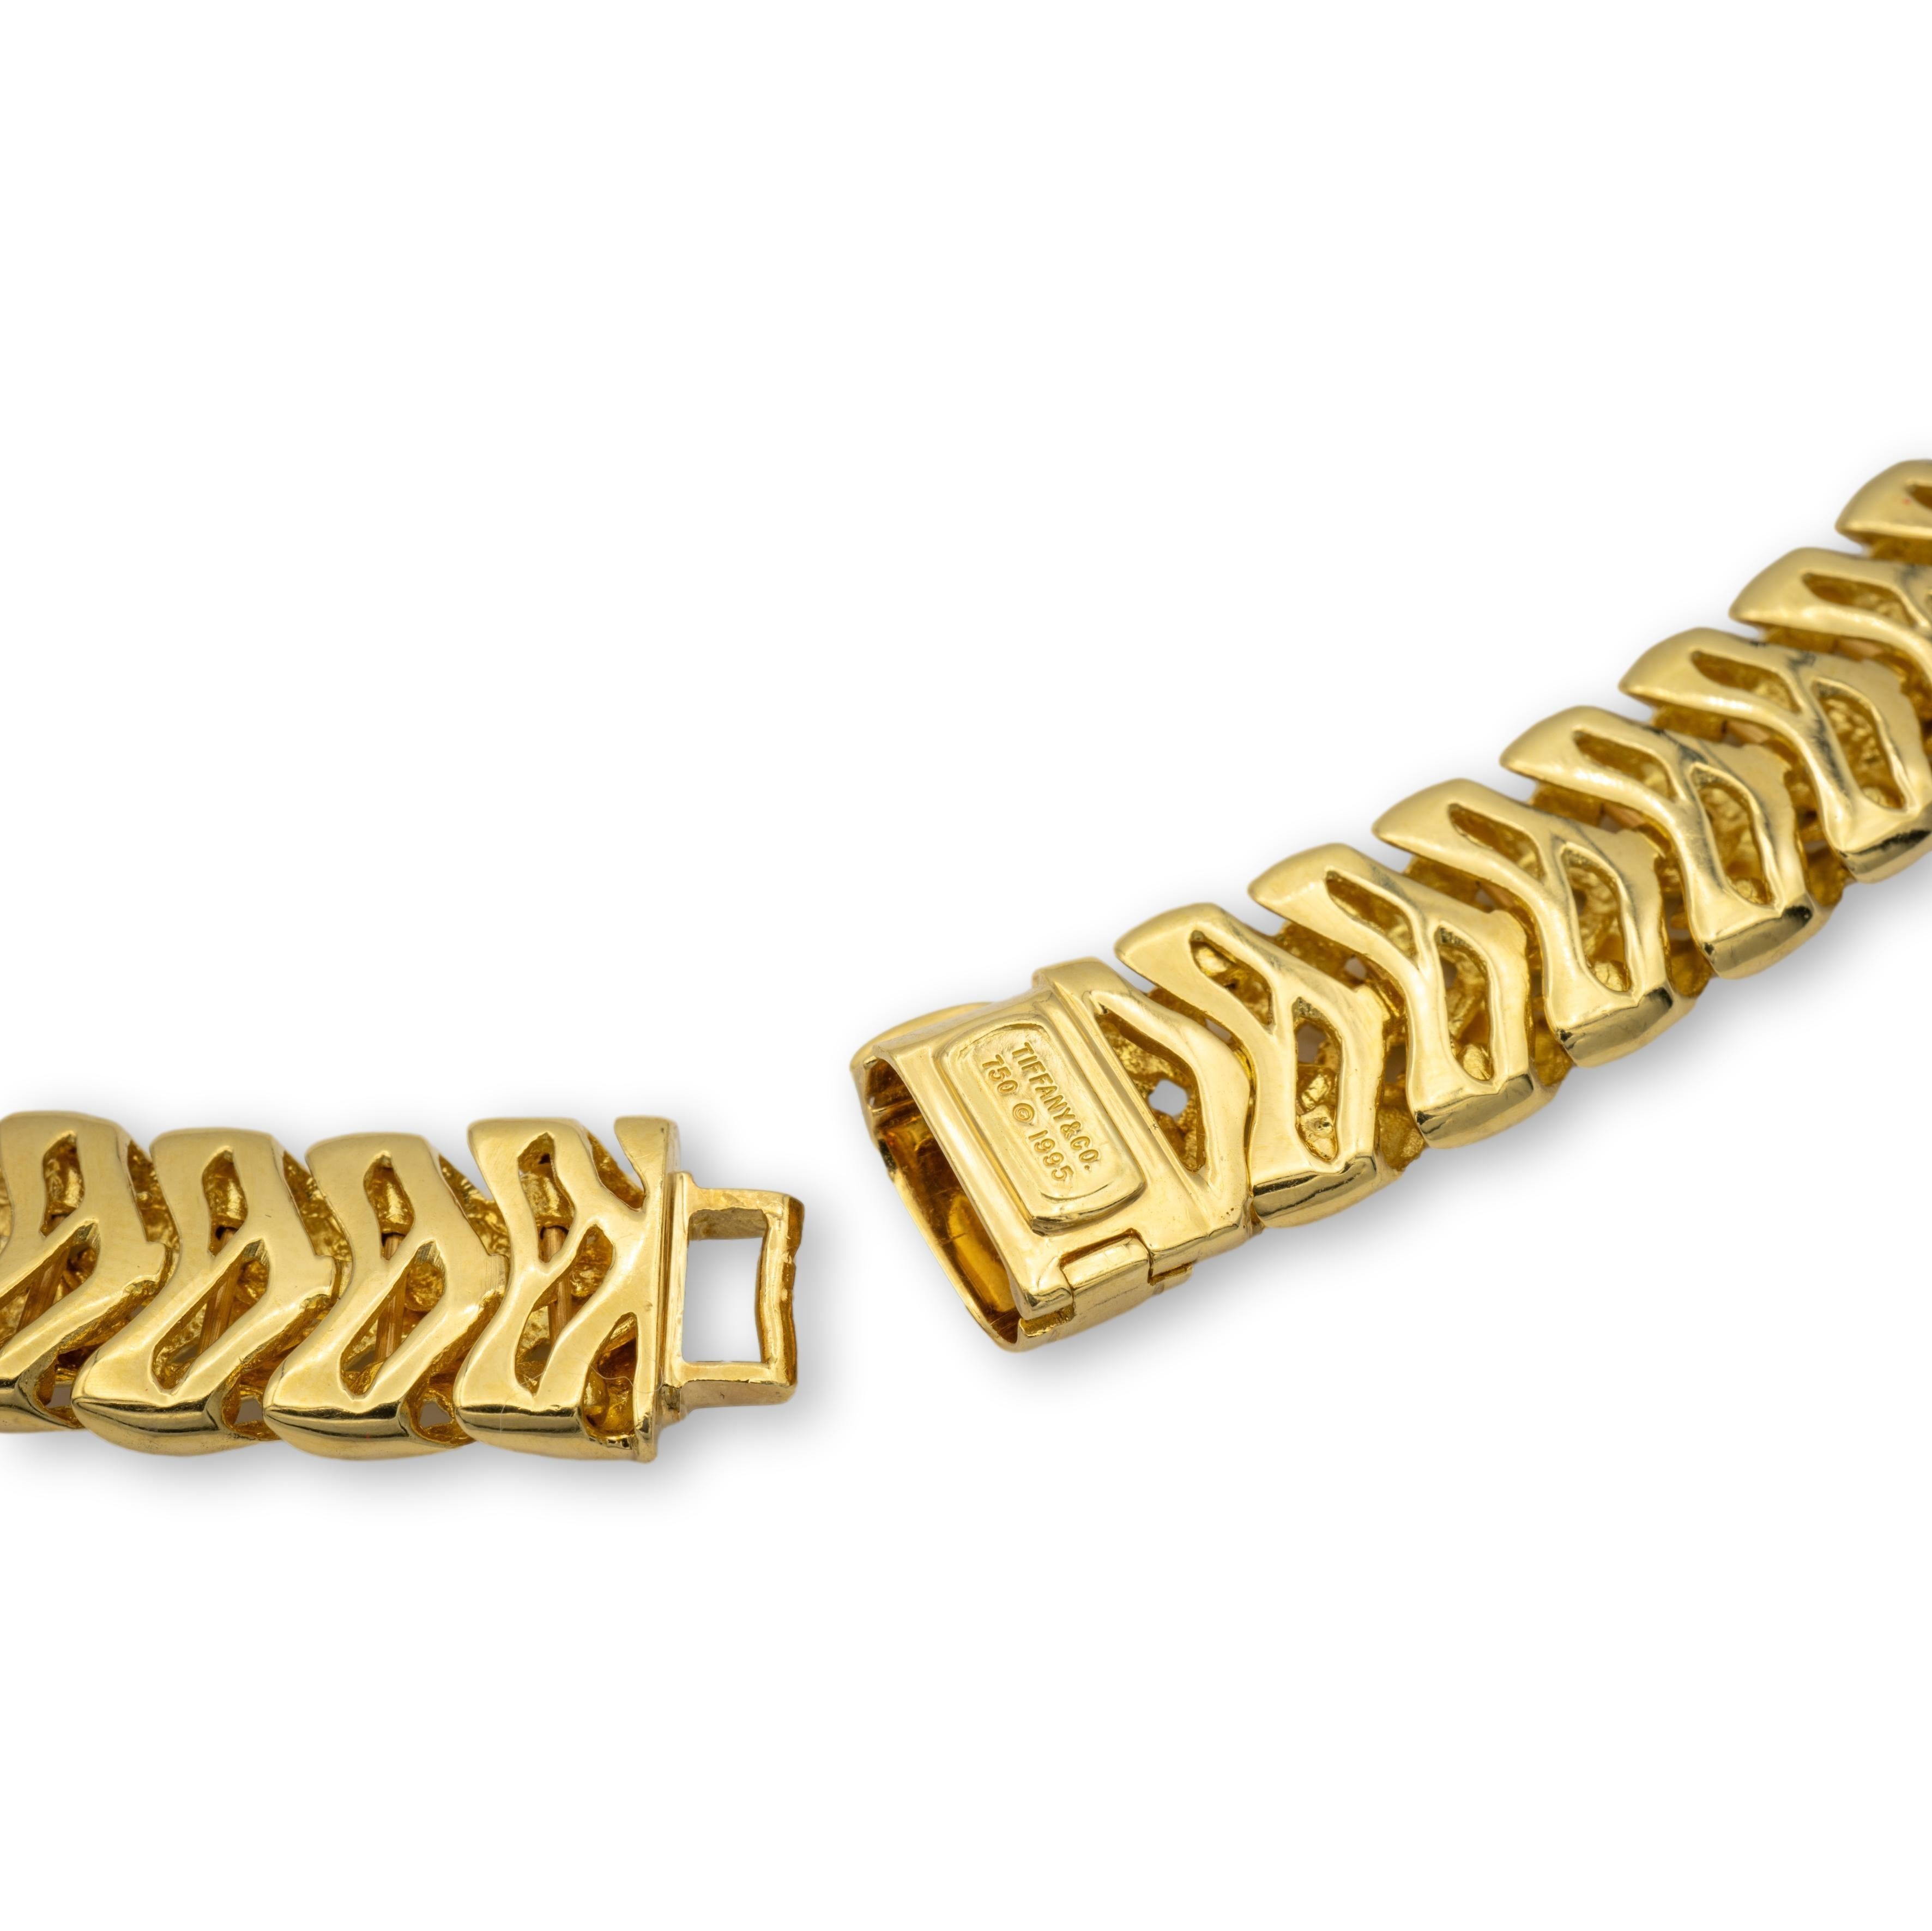 Tiffany & Co. Collier ras de cou vintage de la collection Vannerie finement travaillé en or jaune 18 carats dans un design en forme de panier avec un grand mécanisme de fermeture à mousqueton pliant et crochet. Le collier pèse un poids